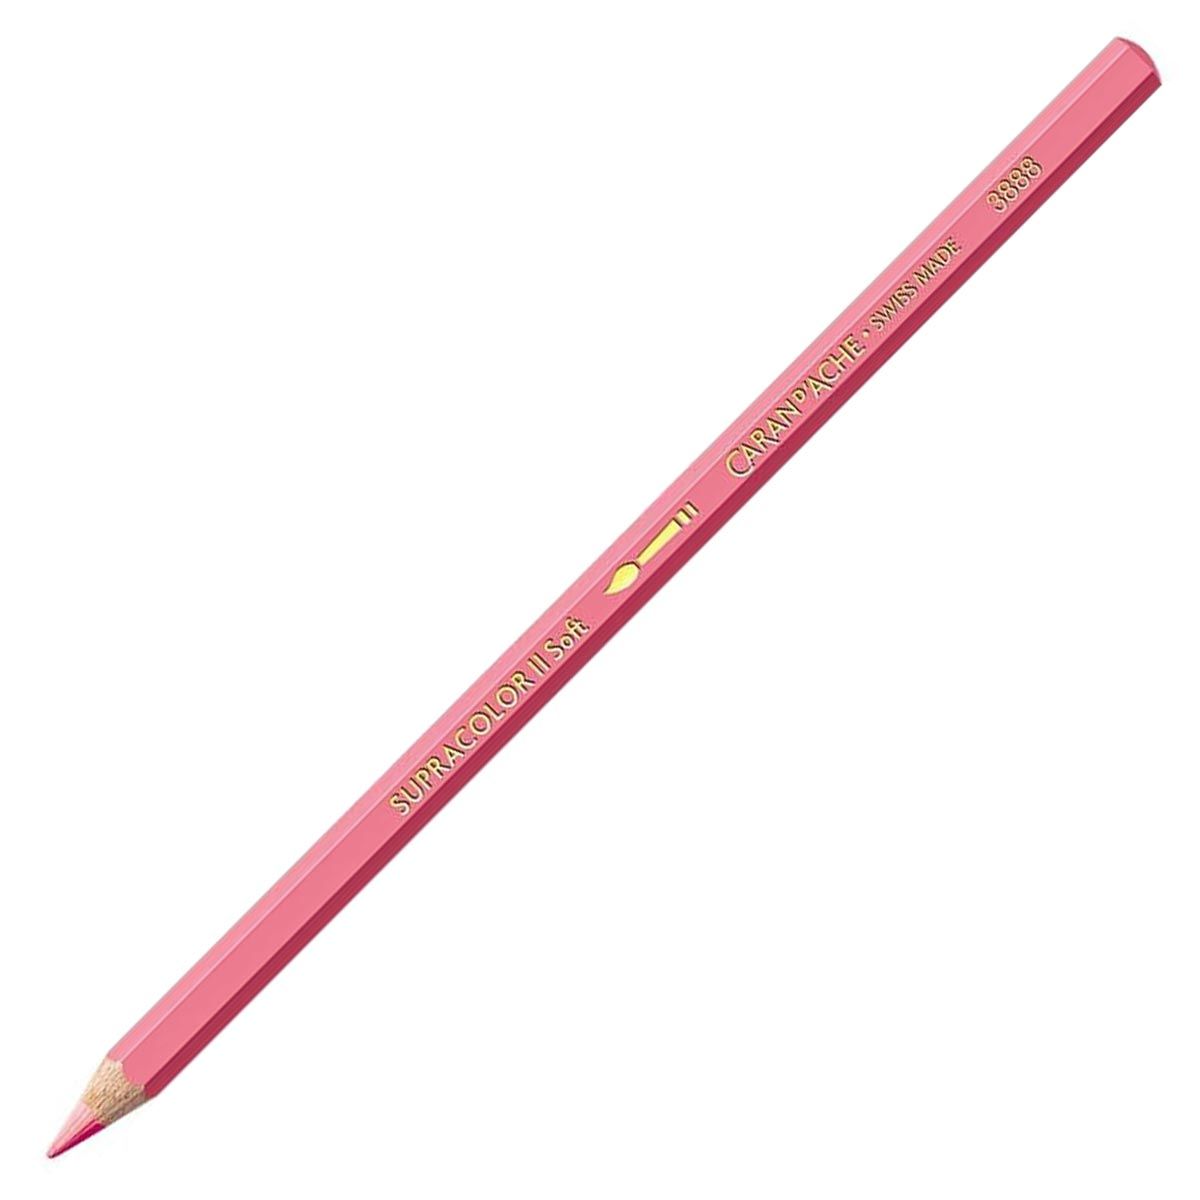 Caran d'Ache Supracolor ll Soft Aquarelle Pencil - Rose Pink 082